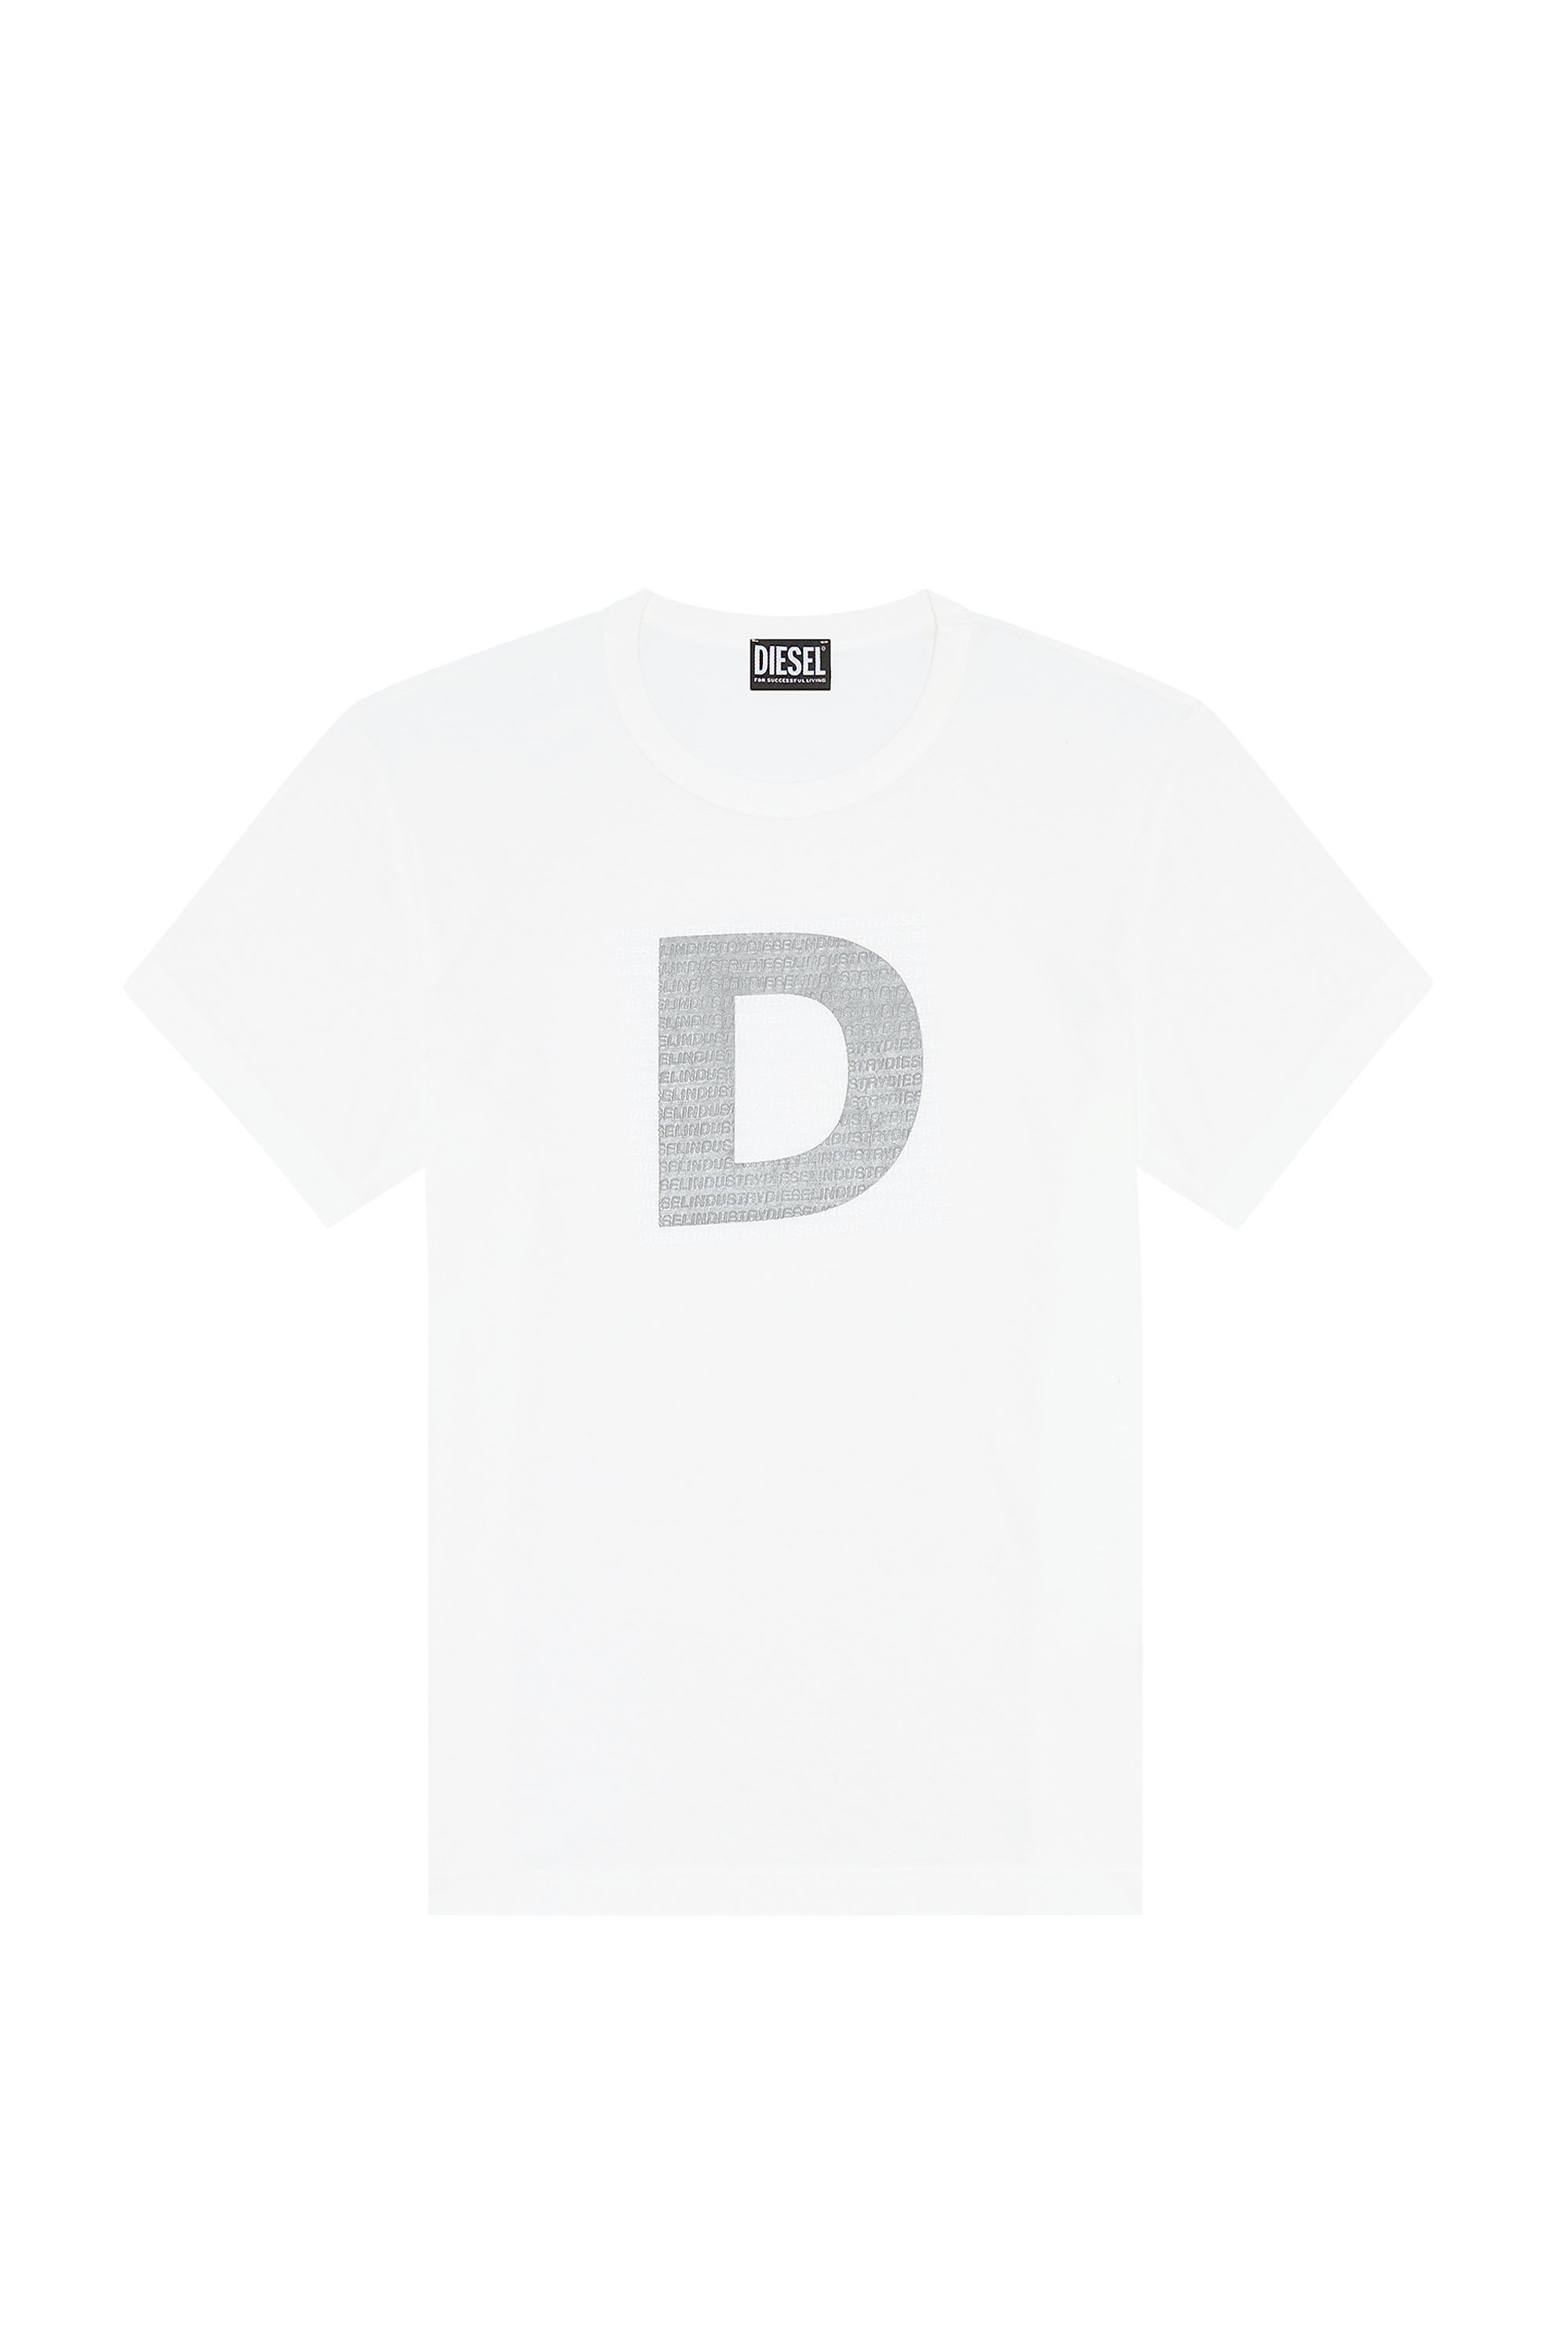 Diesel - T-DIEGOR-COL, White - Image 3